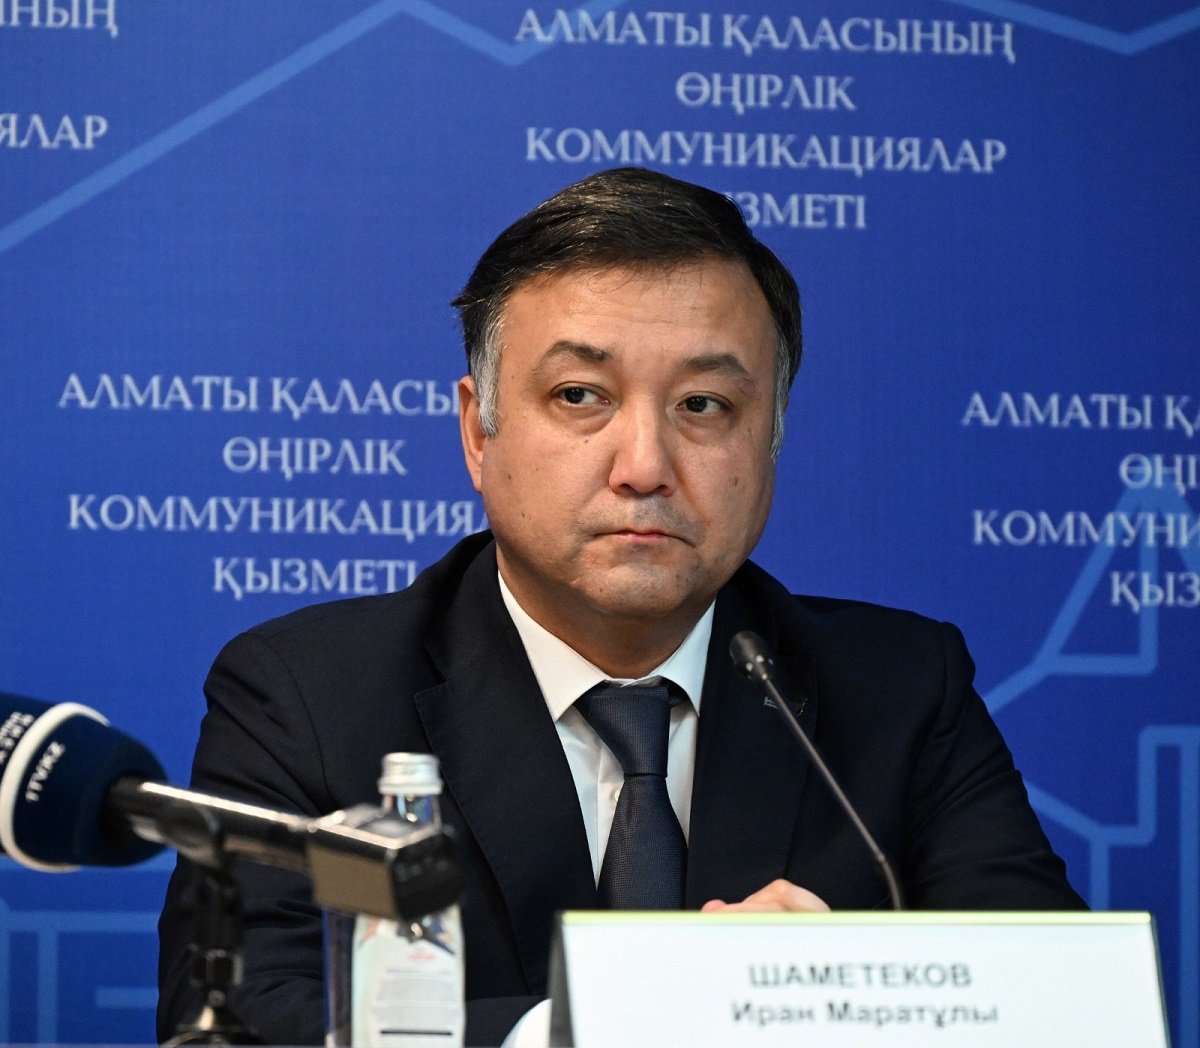 Источник фото: пресс-служба акимата Алматы